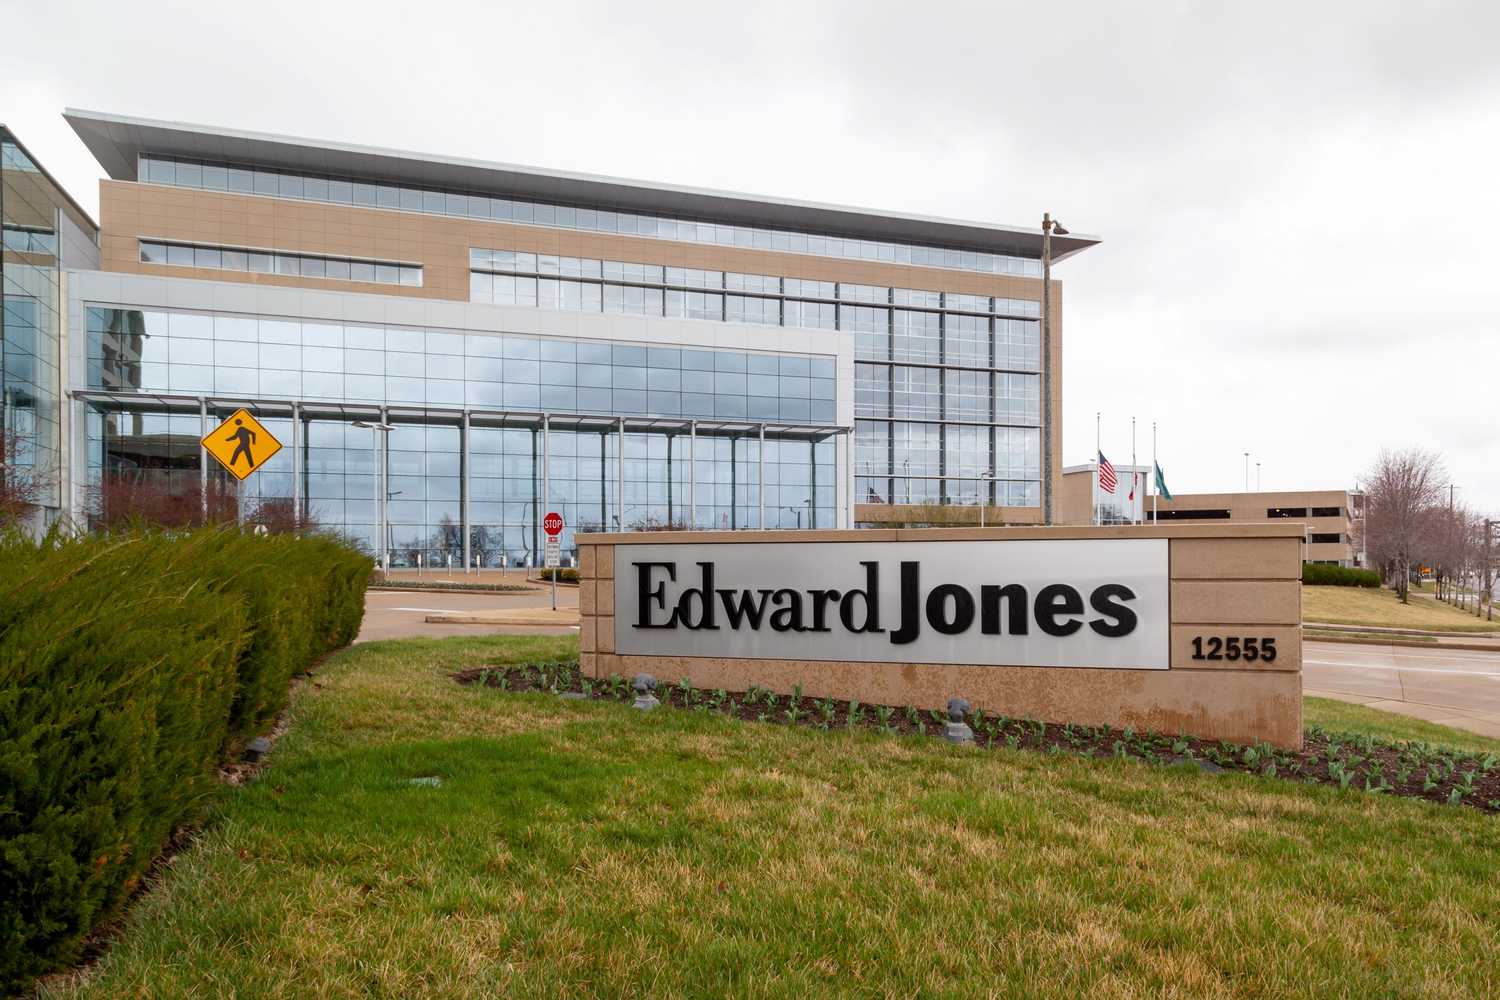 Edward Jones HQ